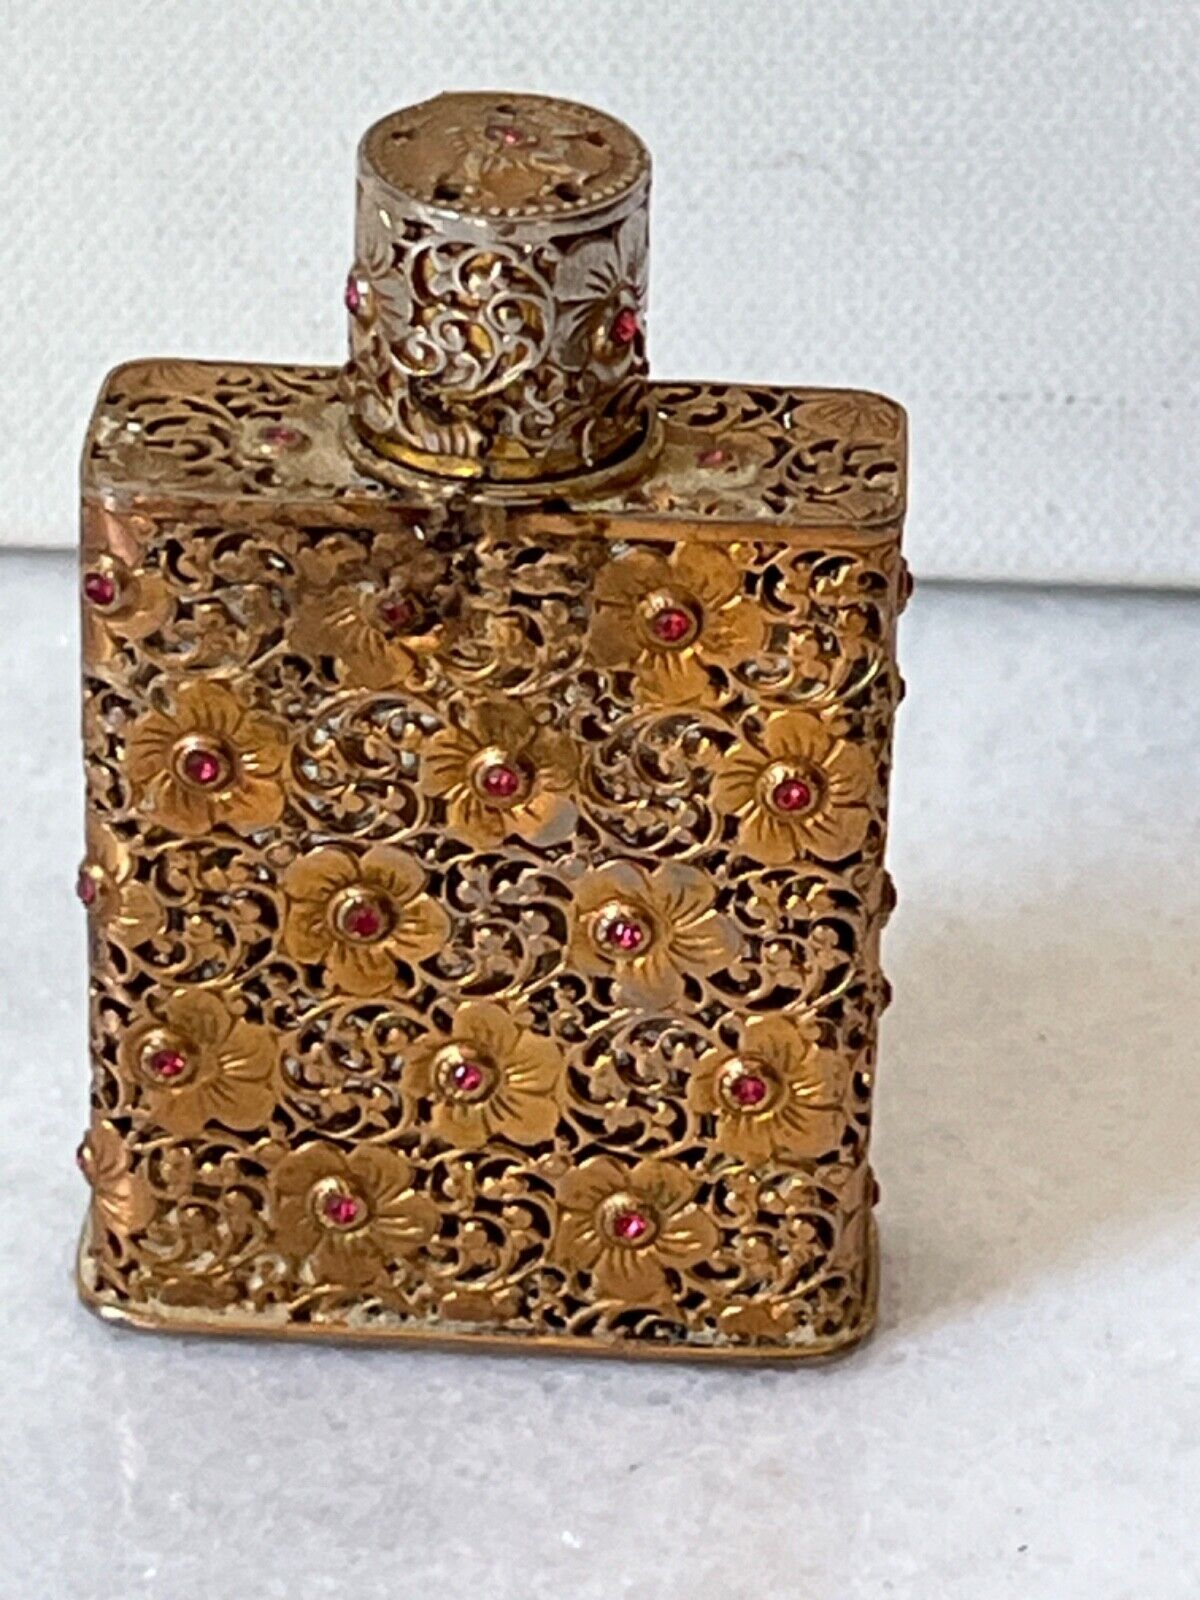 Vintage Schiaparelli French perfume bottle